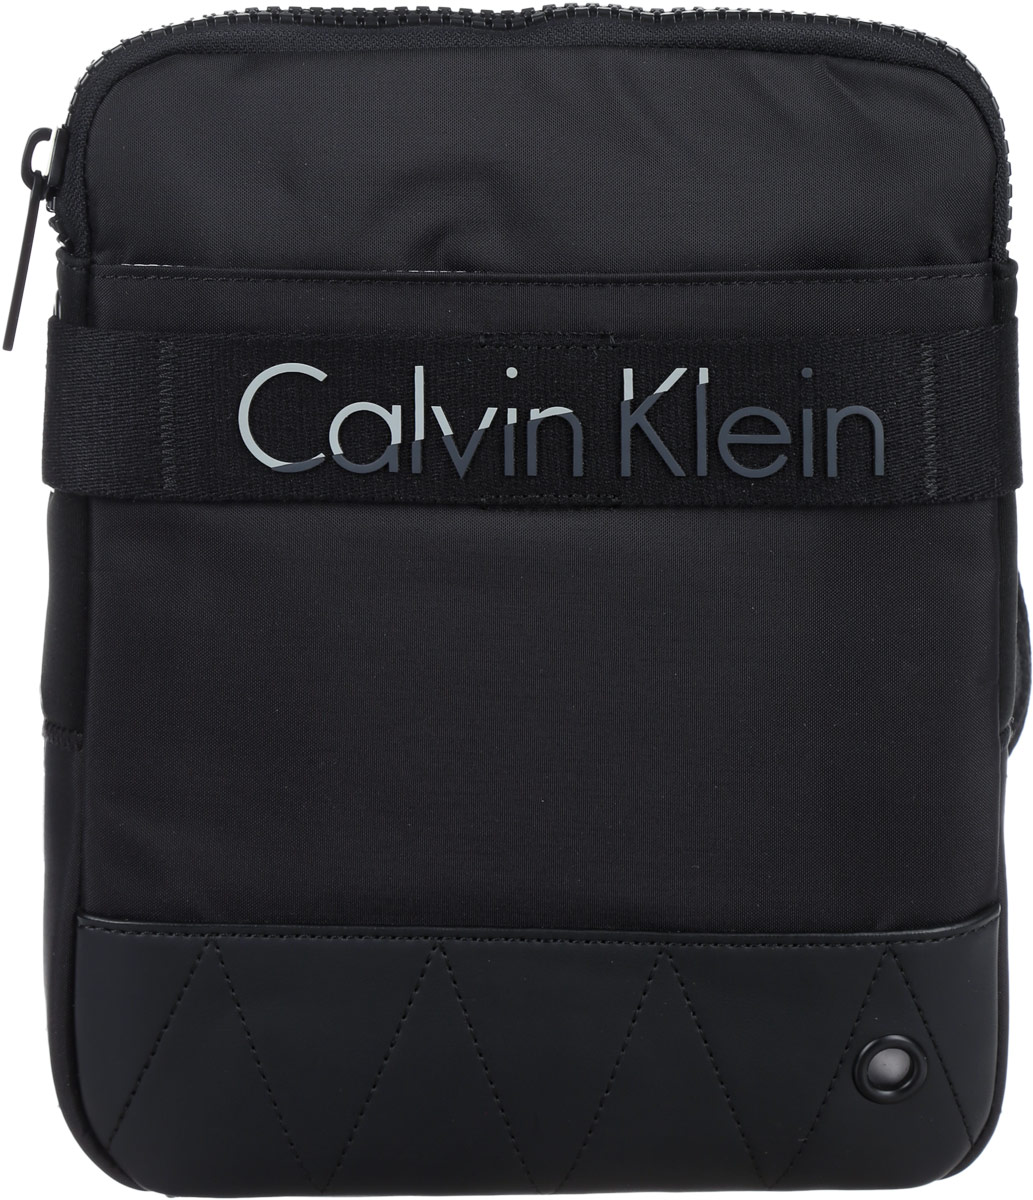 Сумка мужская Calvin Klein Jeans, цвет: черный. K50K502291_0010K50K502291_0010Стильная мужская сумка Calvin Klein Jeans выполнена из полиуретана, полиамида и полиэстера. Изделие имеет одно отделение, которое закрывается на застежку-молнию. Внутри находится накладной открытый карман. Снаружи, на передней стенке расположен нашивной карман на липучке. Задняя часть сумки дополнена мягкой сетчатой вставкой, которая обеспечивает комфорт при носке. Сумка оснащена текстильным плечевым ремнем, который регулируется по длине. Стильная сумка идеально подчеркнет ваш неповторимый стиль.